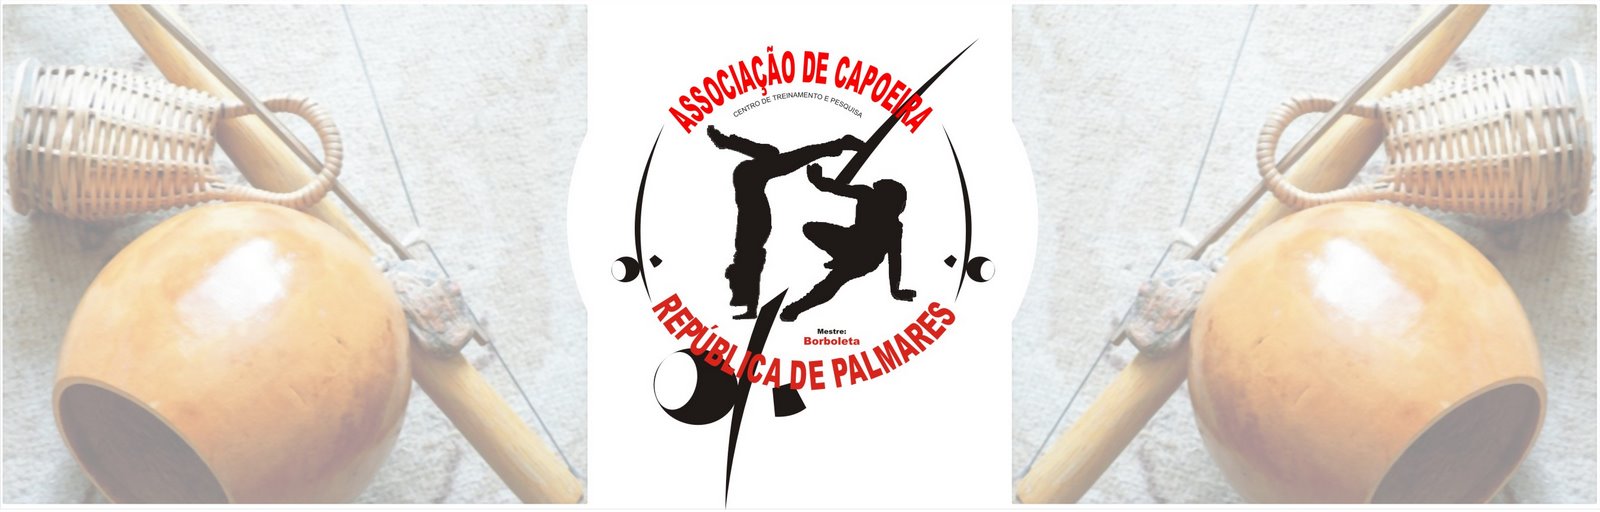 Associação de Capoeira República de Palmares